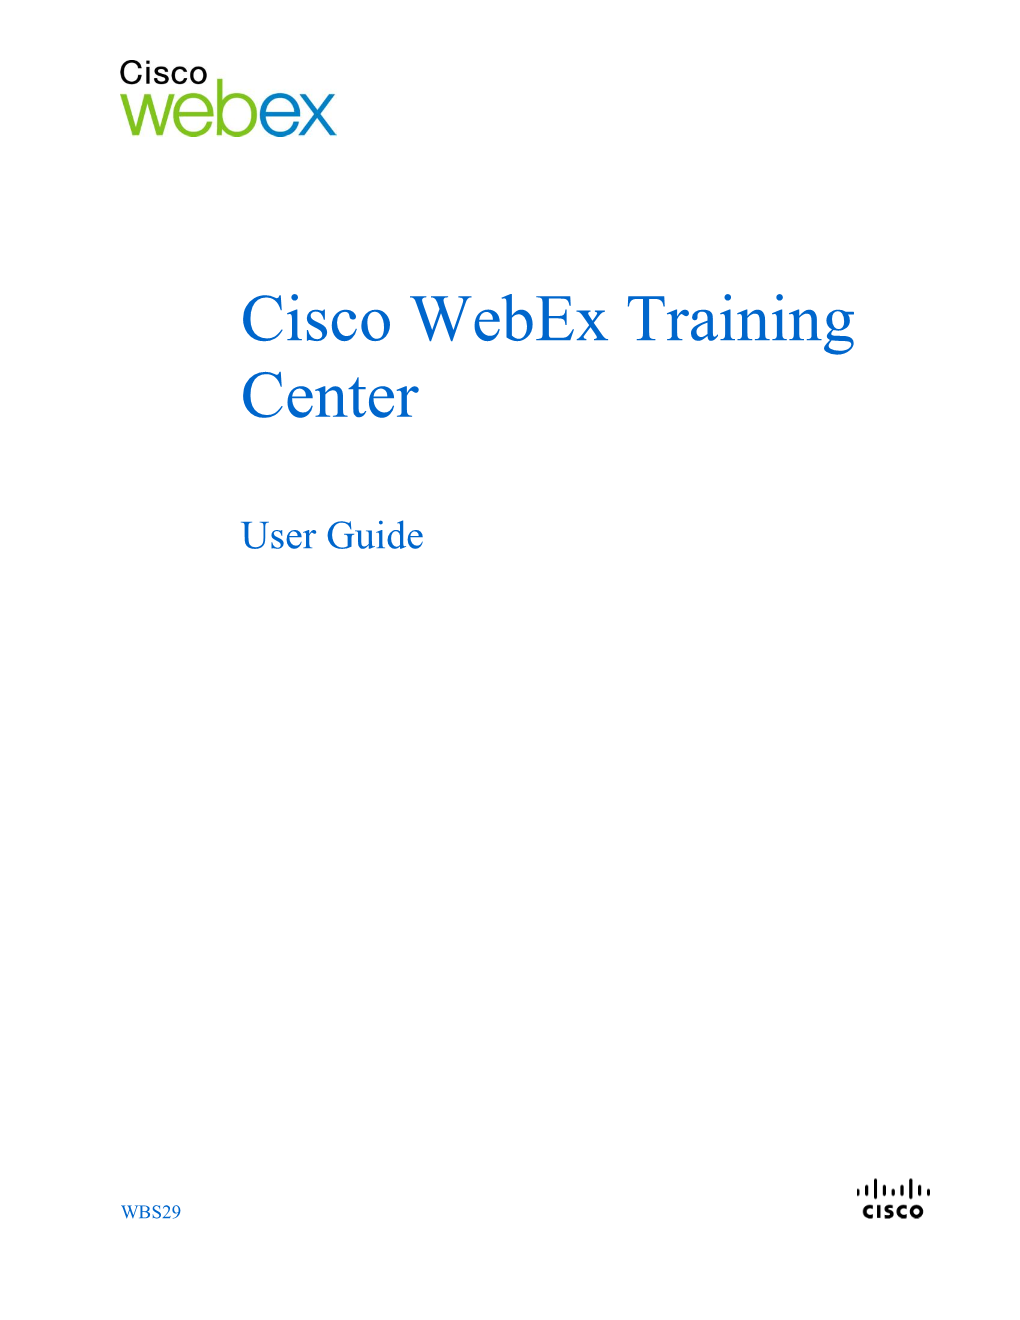 Cisco Webex Training Center User Guide